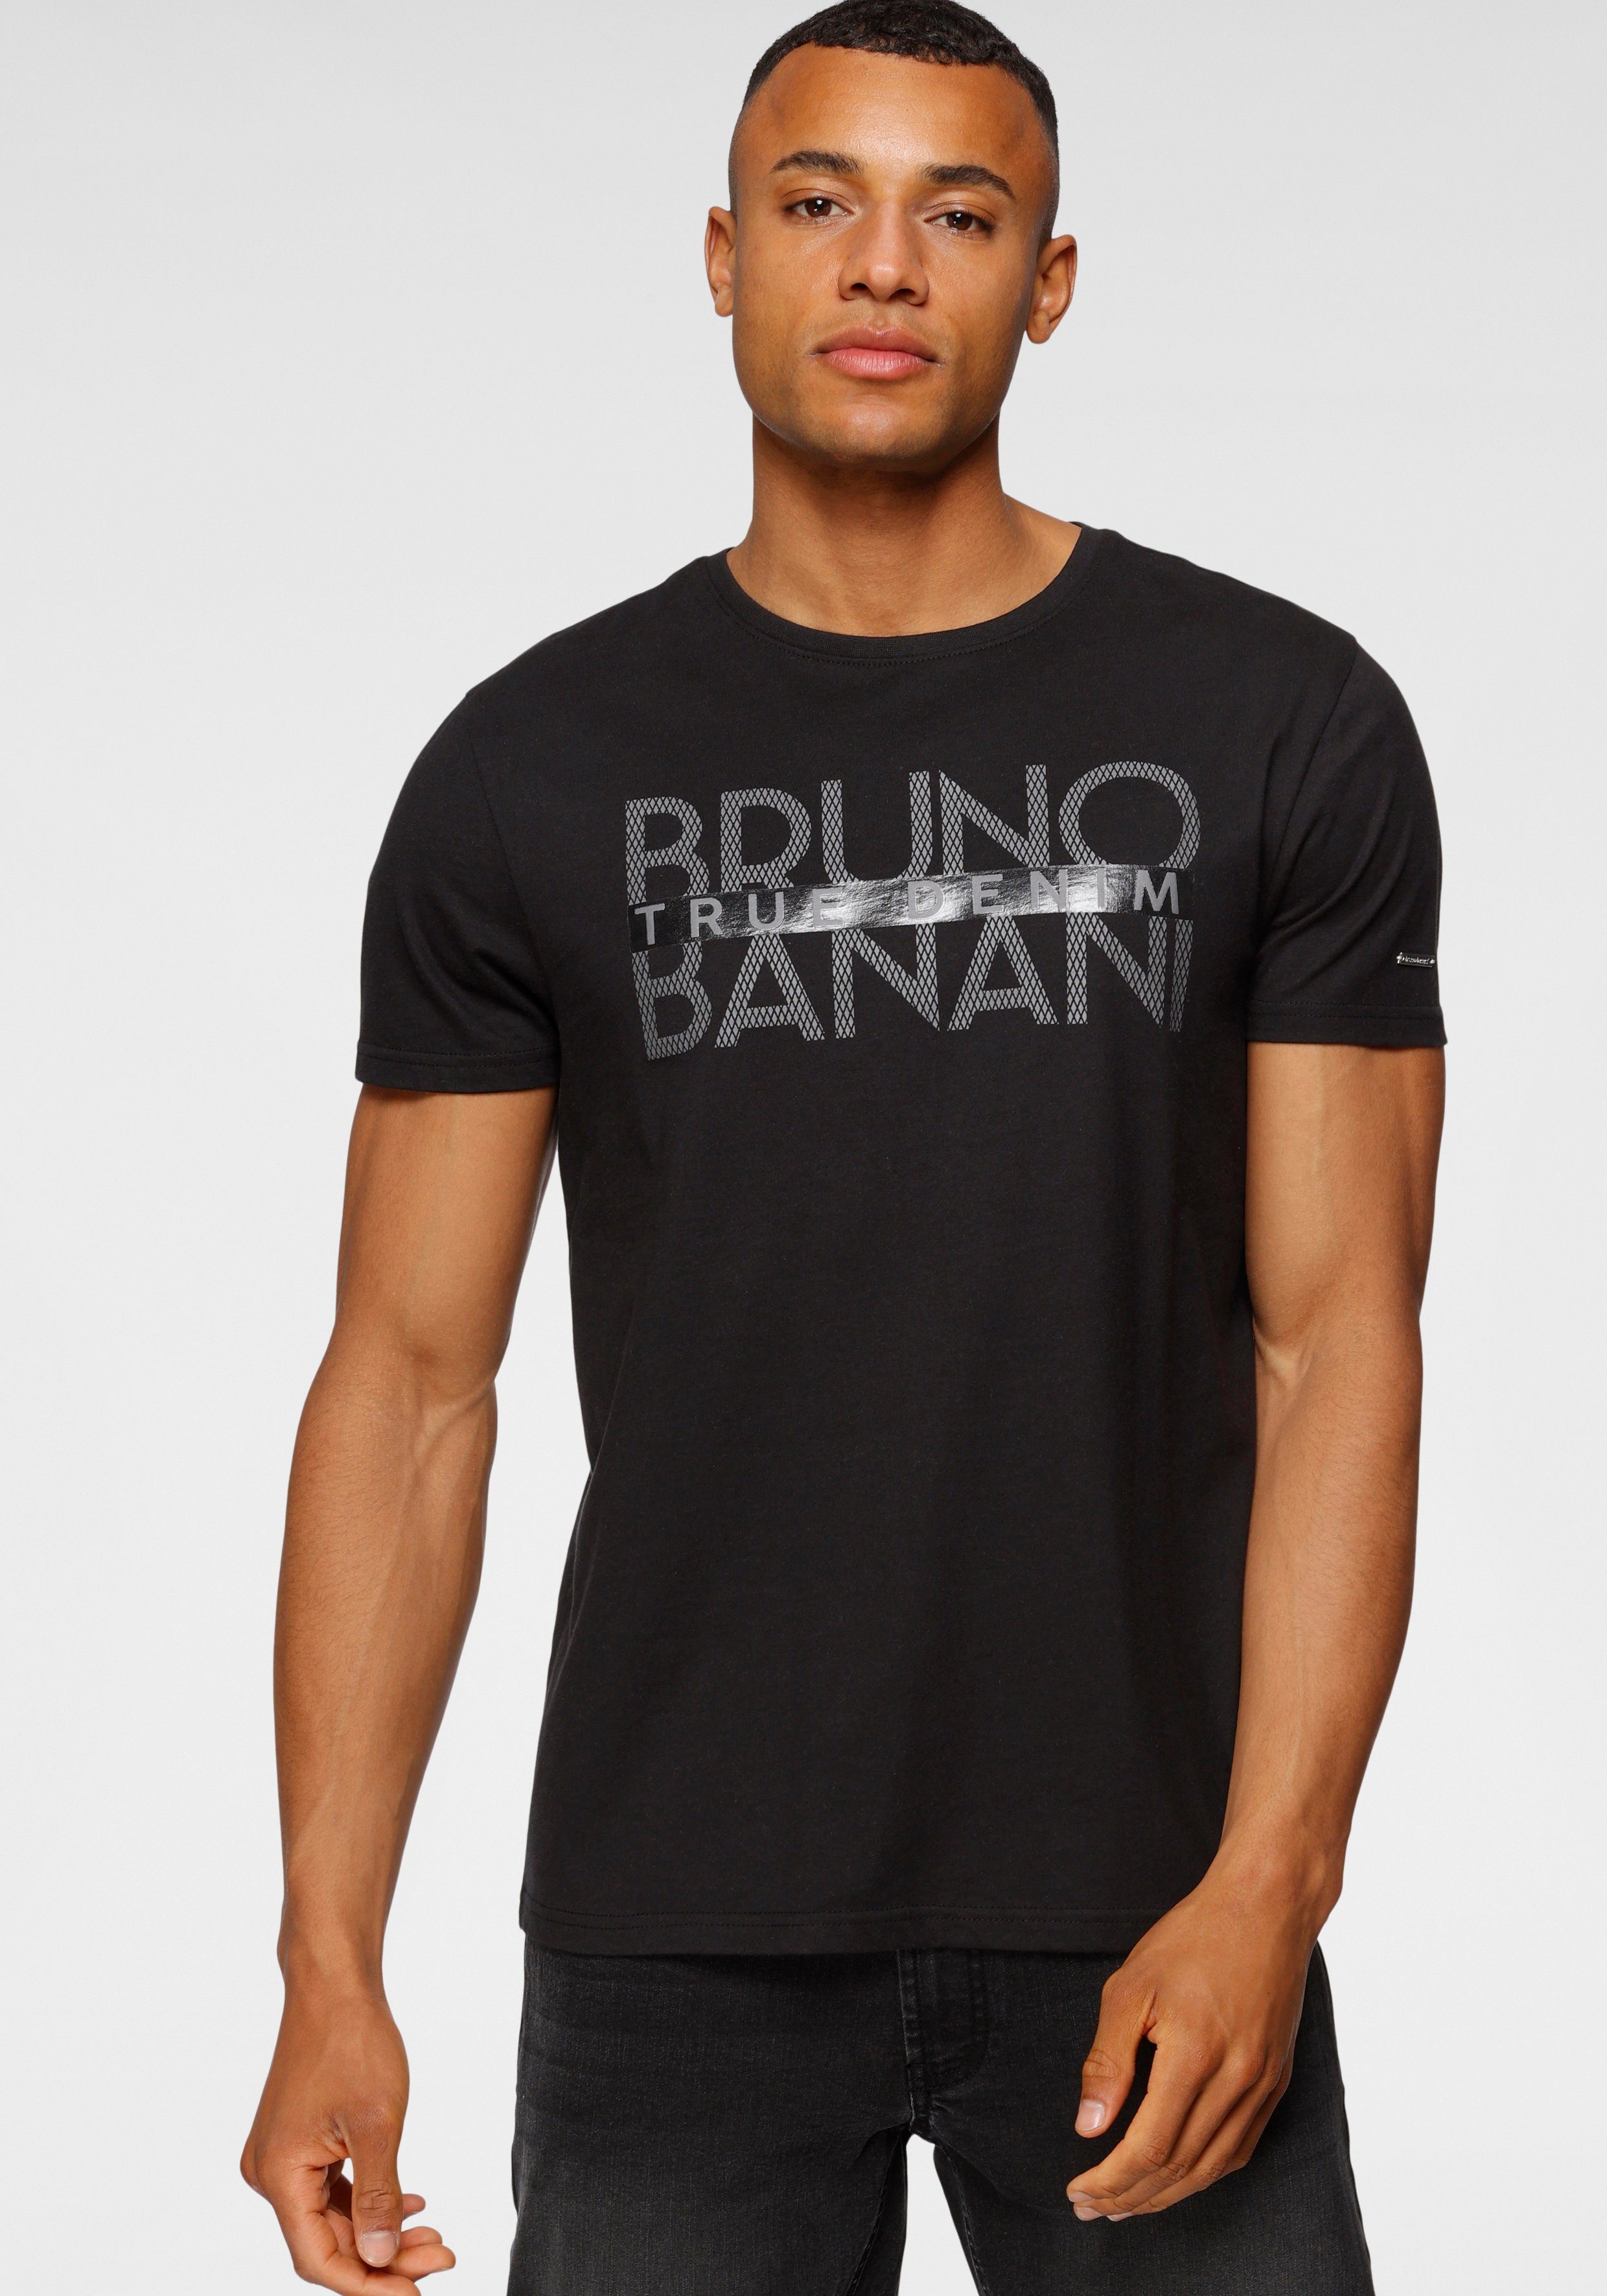 Bruno T-Shirt Print glänzendem mit schwarz Banani